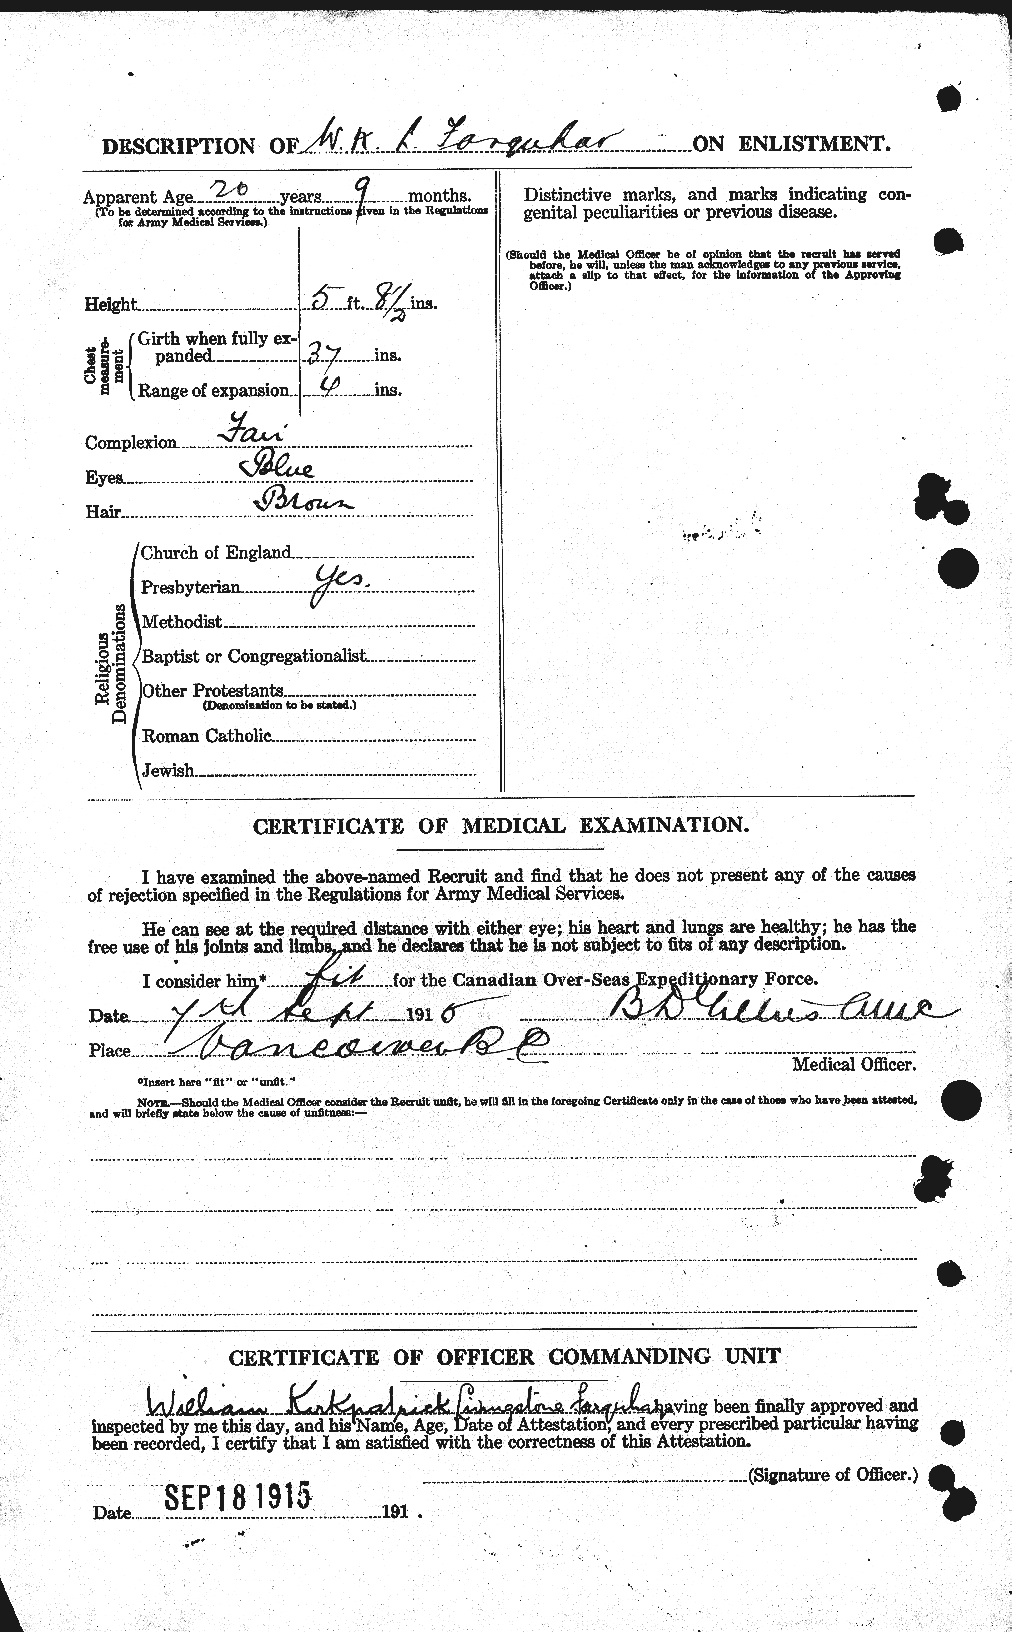 Dossiers du Personnel de la Première Guerre mondiale - CEC 319287b